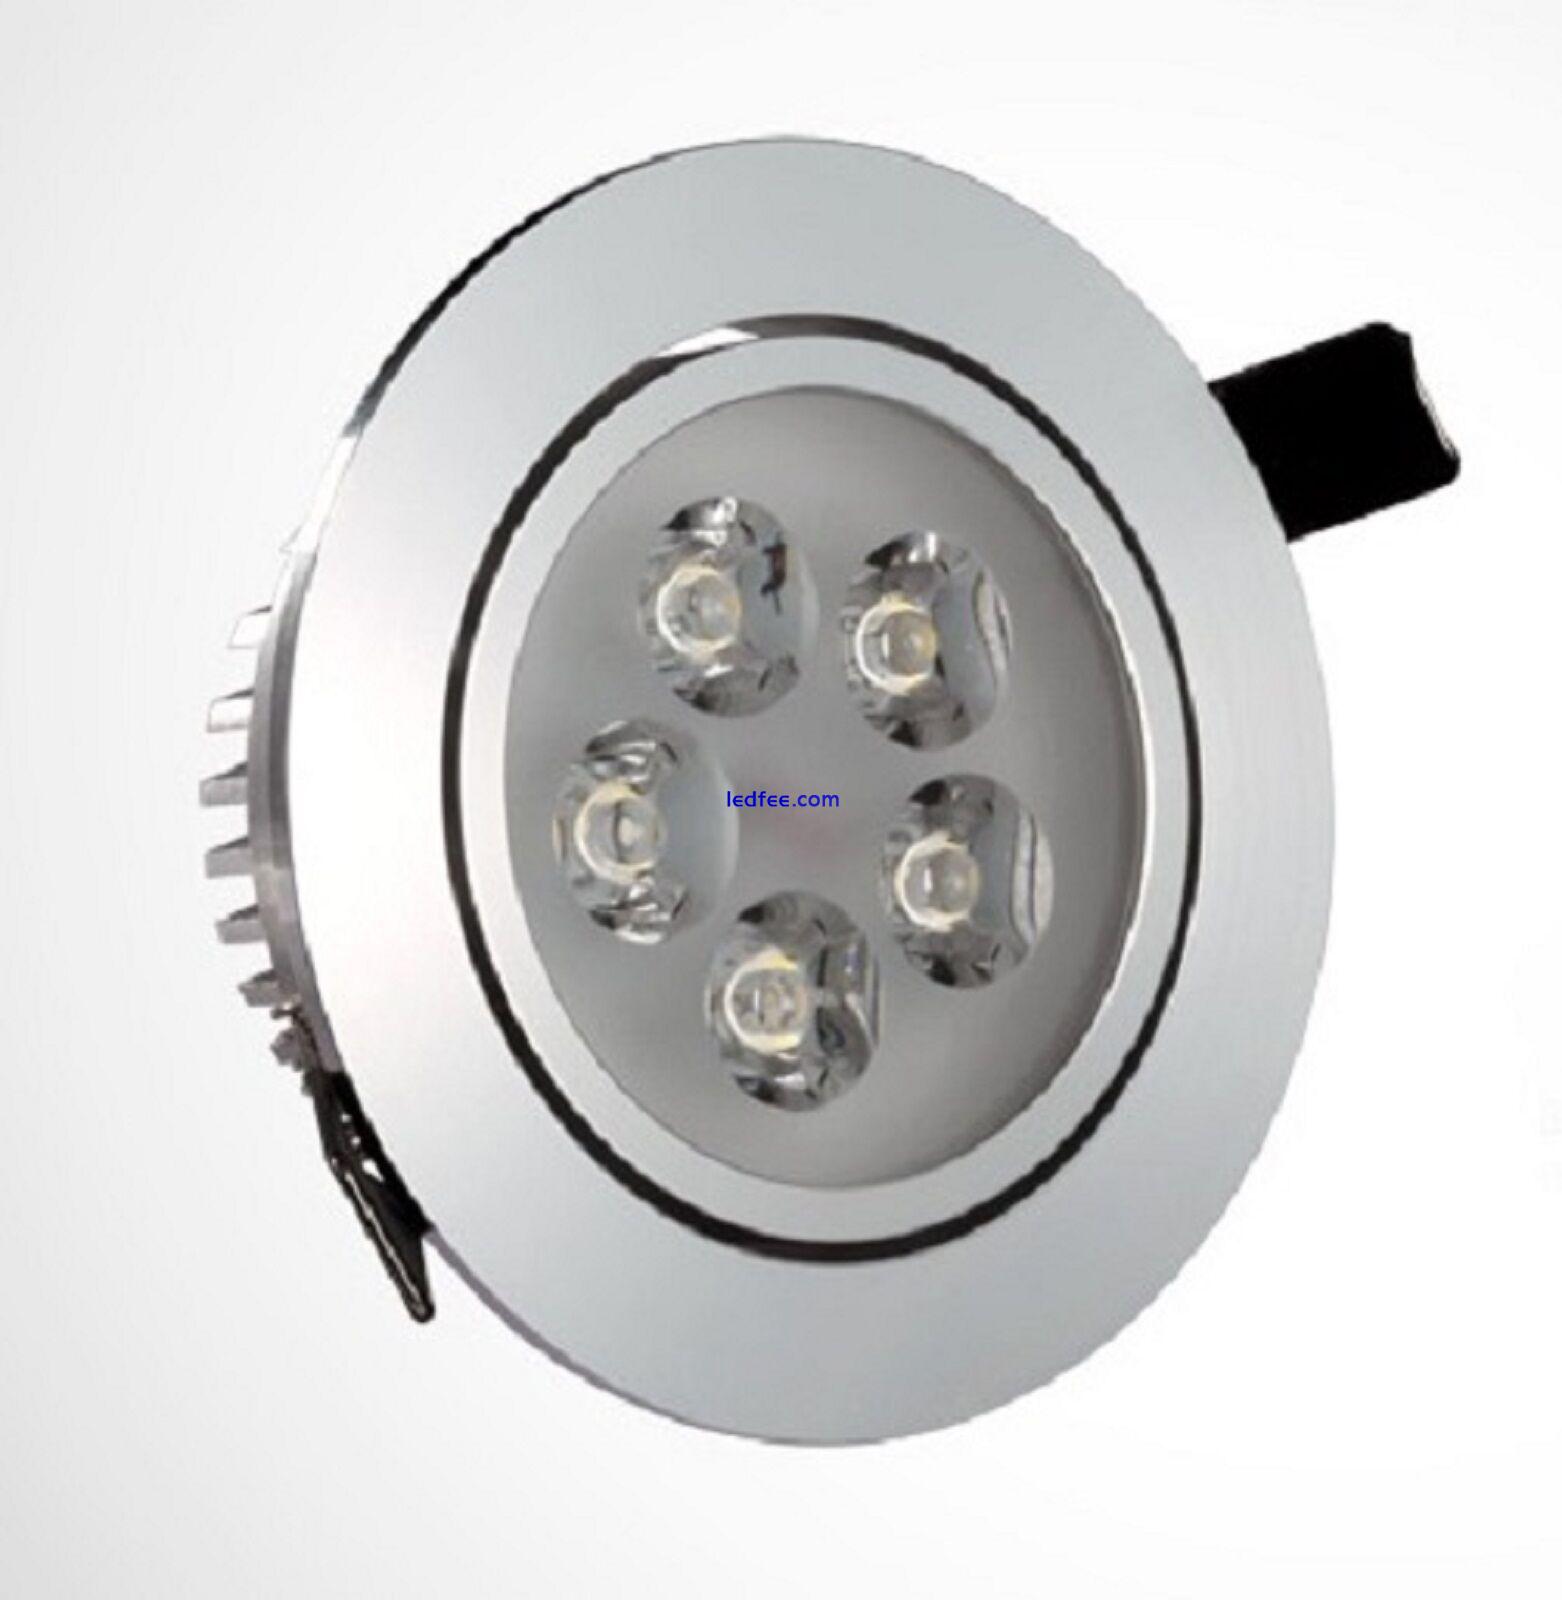 PREMIER Large 3-12W LED Ceiling Wall Down Spot Light LONG UK Warranty 5 